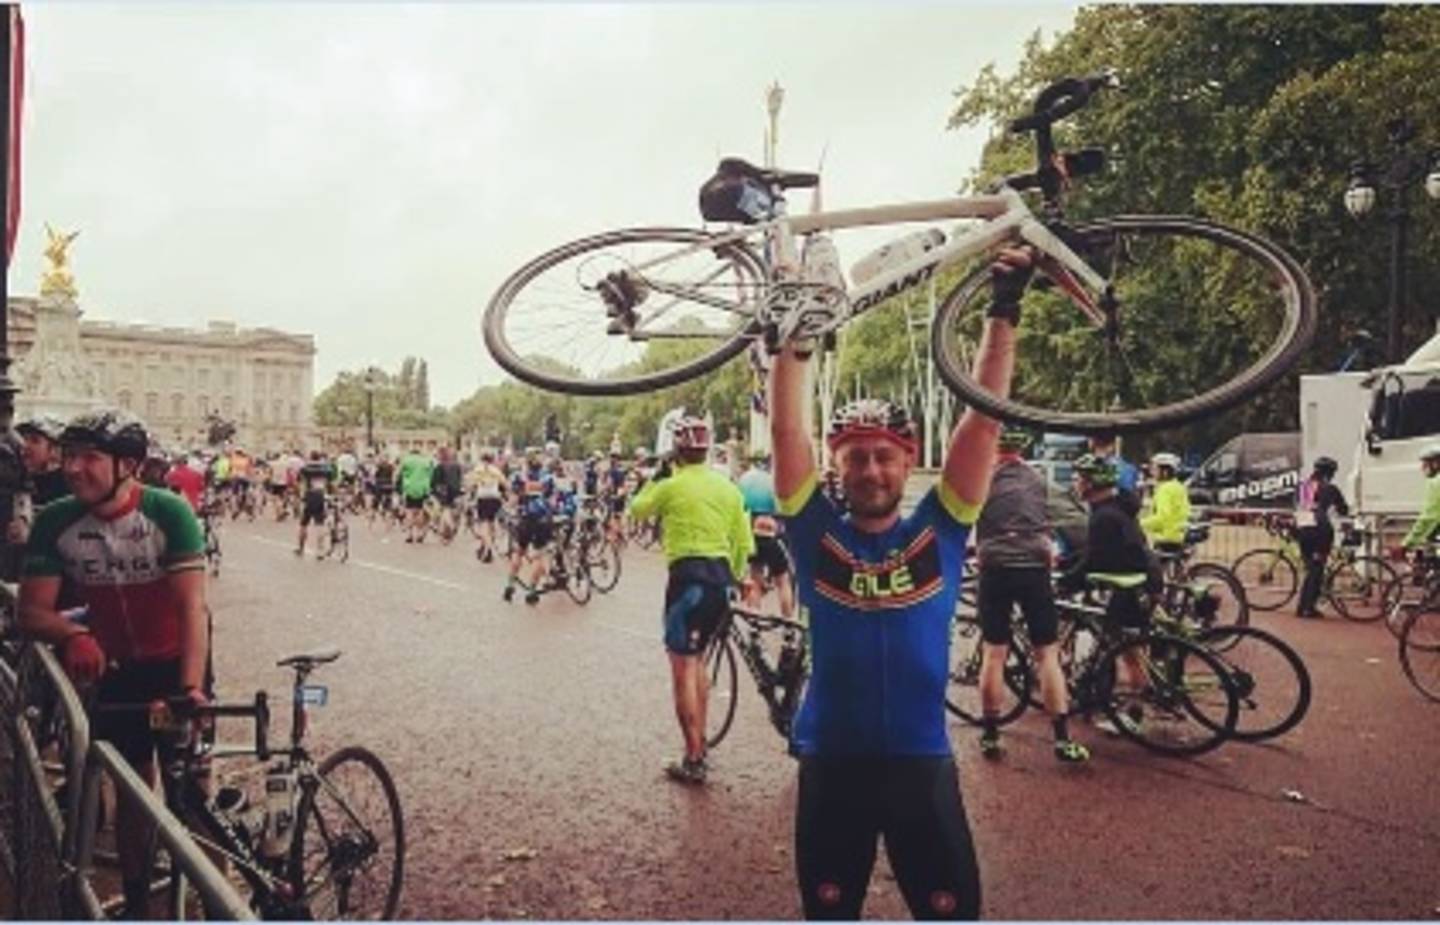 Craig celebrates after finishing Ride London 100 mile bike ride